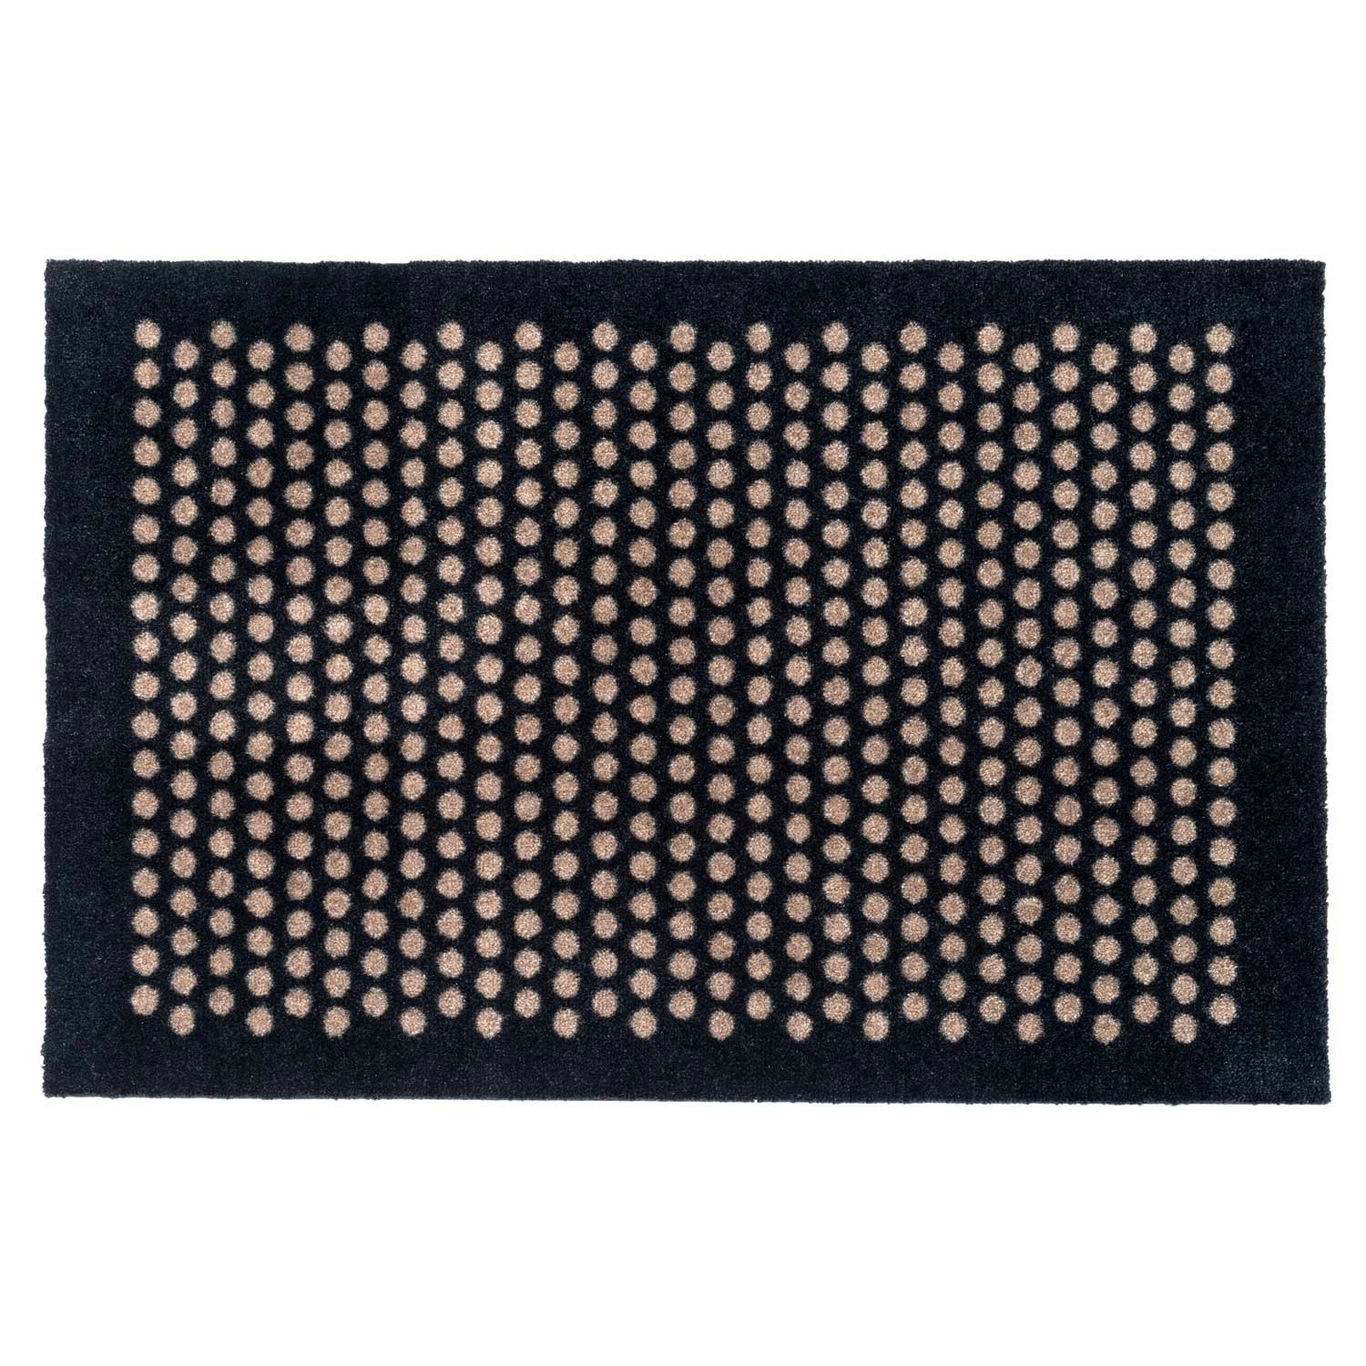 Dot Door Mat, Black / Beige, 90x60 cm